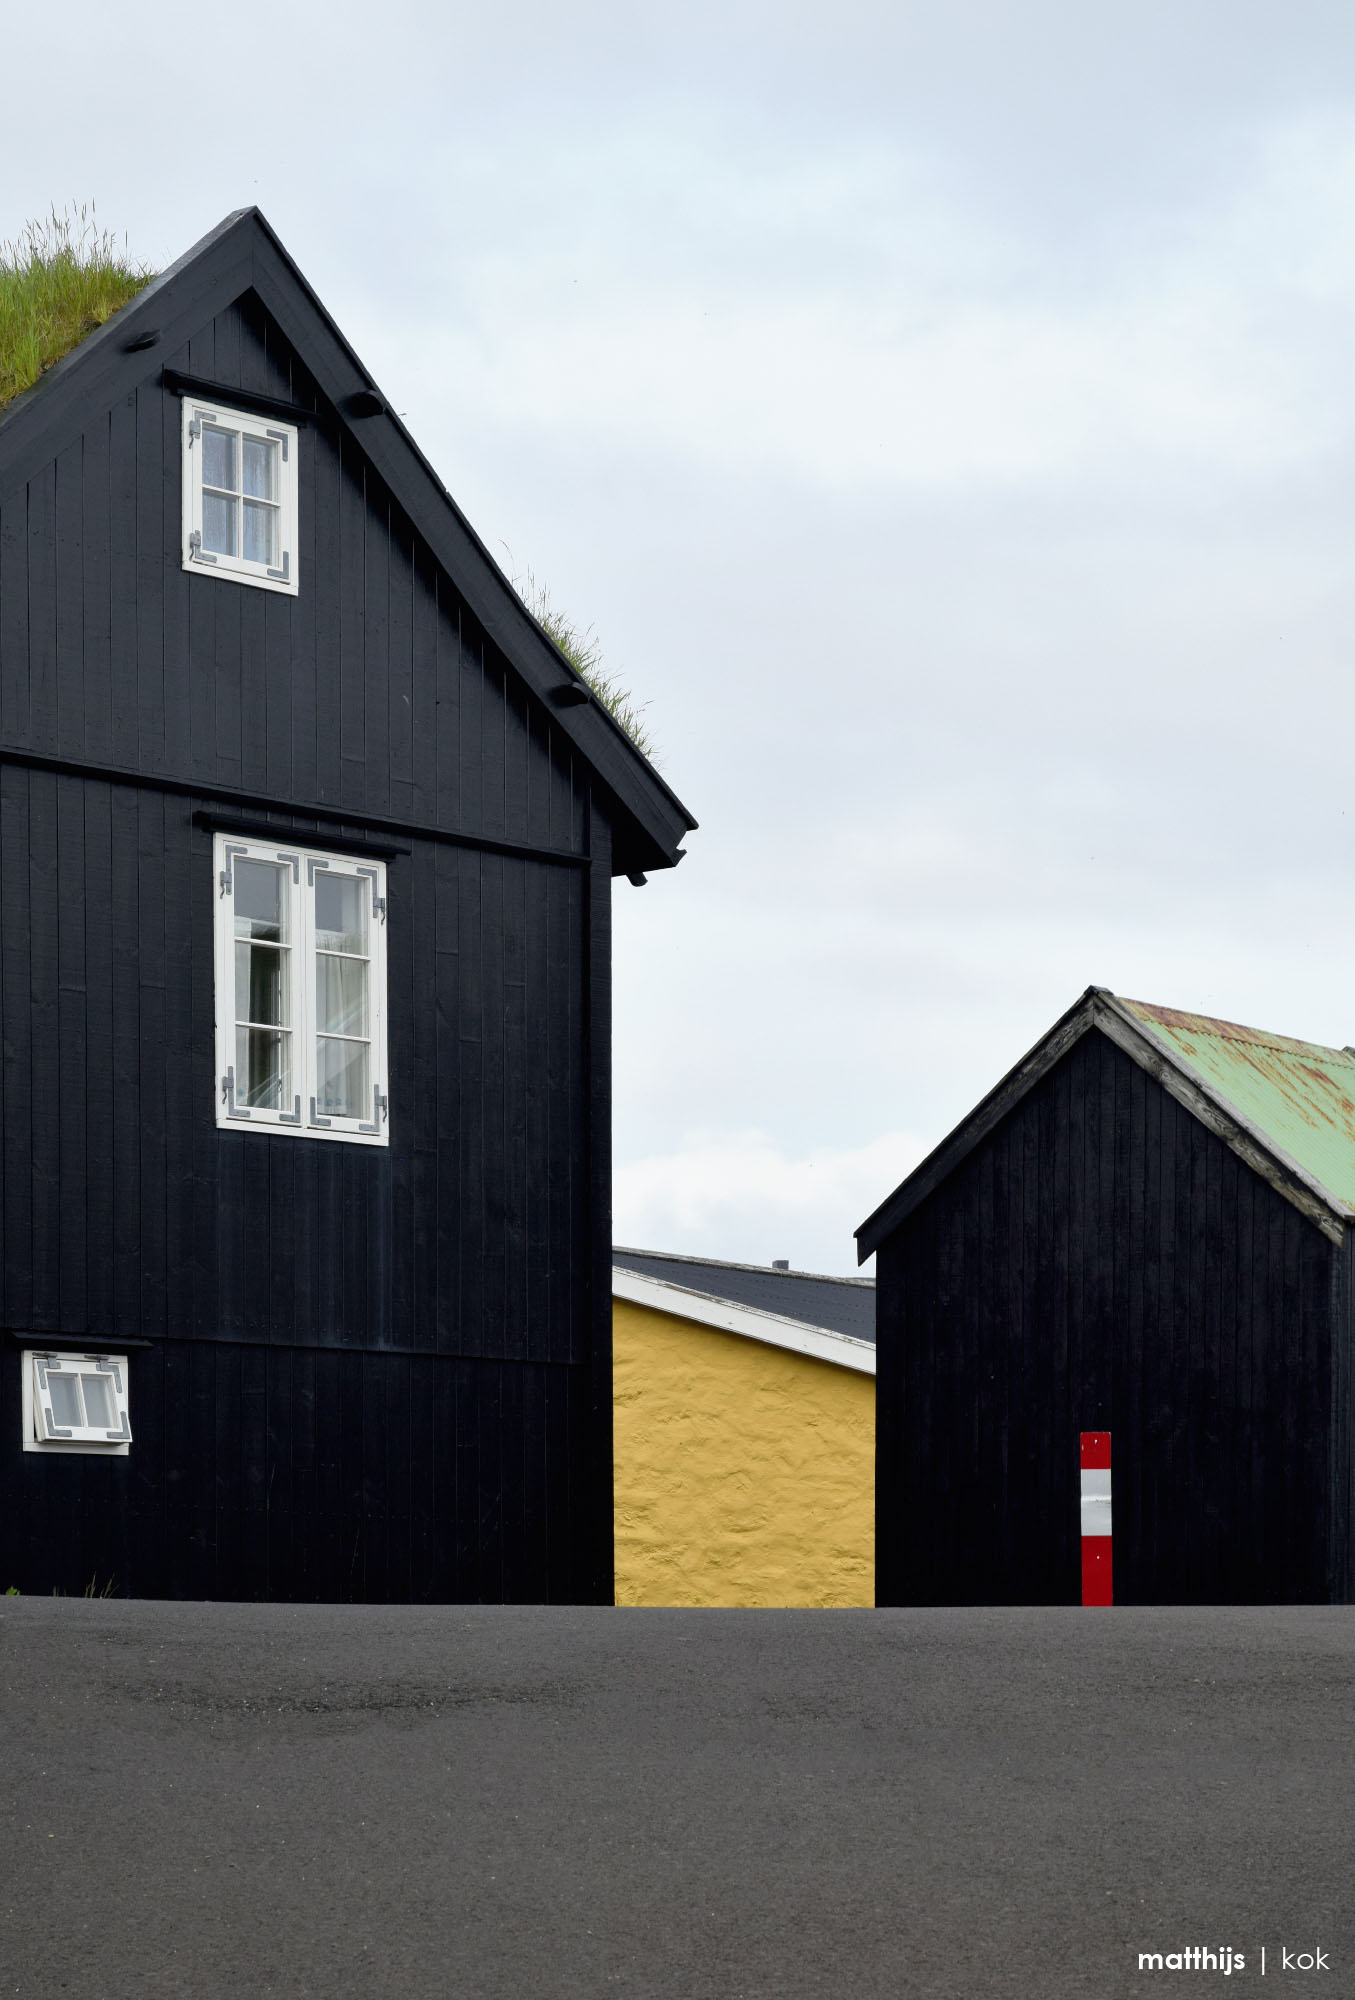 Reyn, Tórshavn Old Town, Faroe Islands | Photo by Matthijs Kok